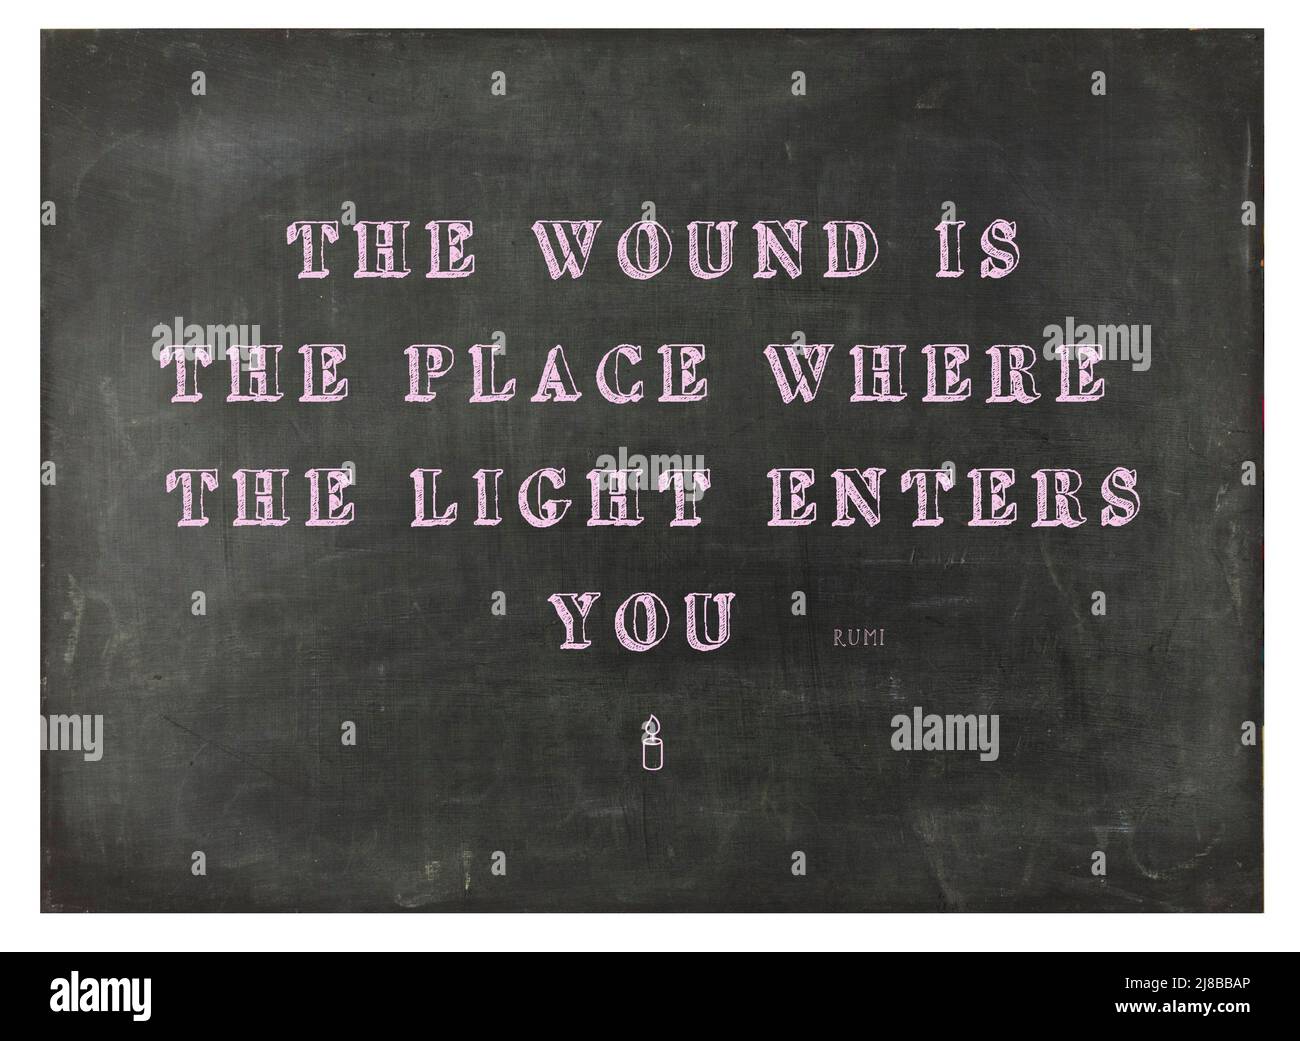 Une citation inspirée des enseignements de Rumi, sur un tableau de surveillance sur le sujet de l'illumination spirituelle - la photographie de stock Banque D'Images